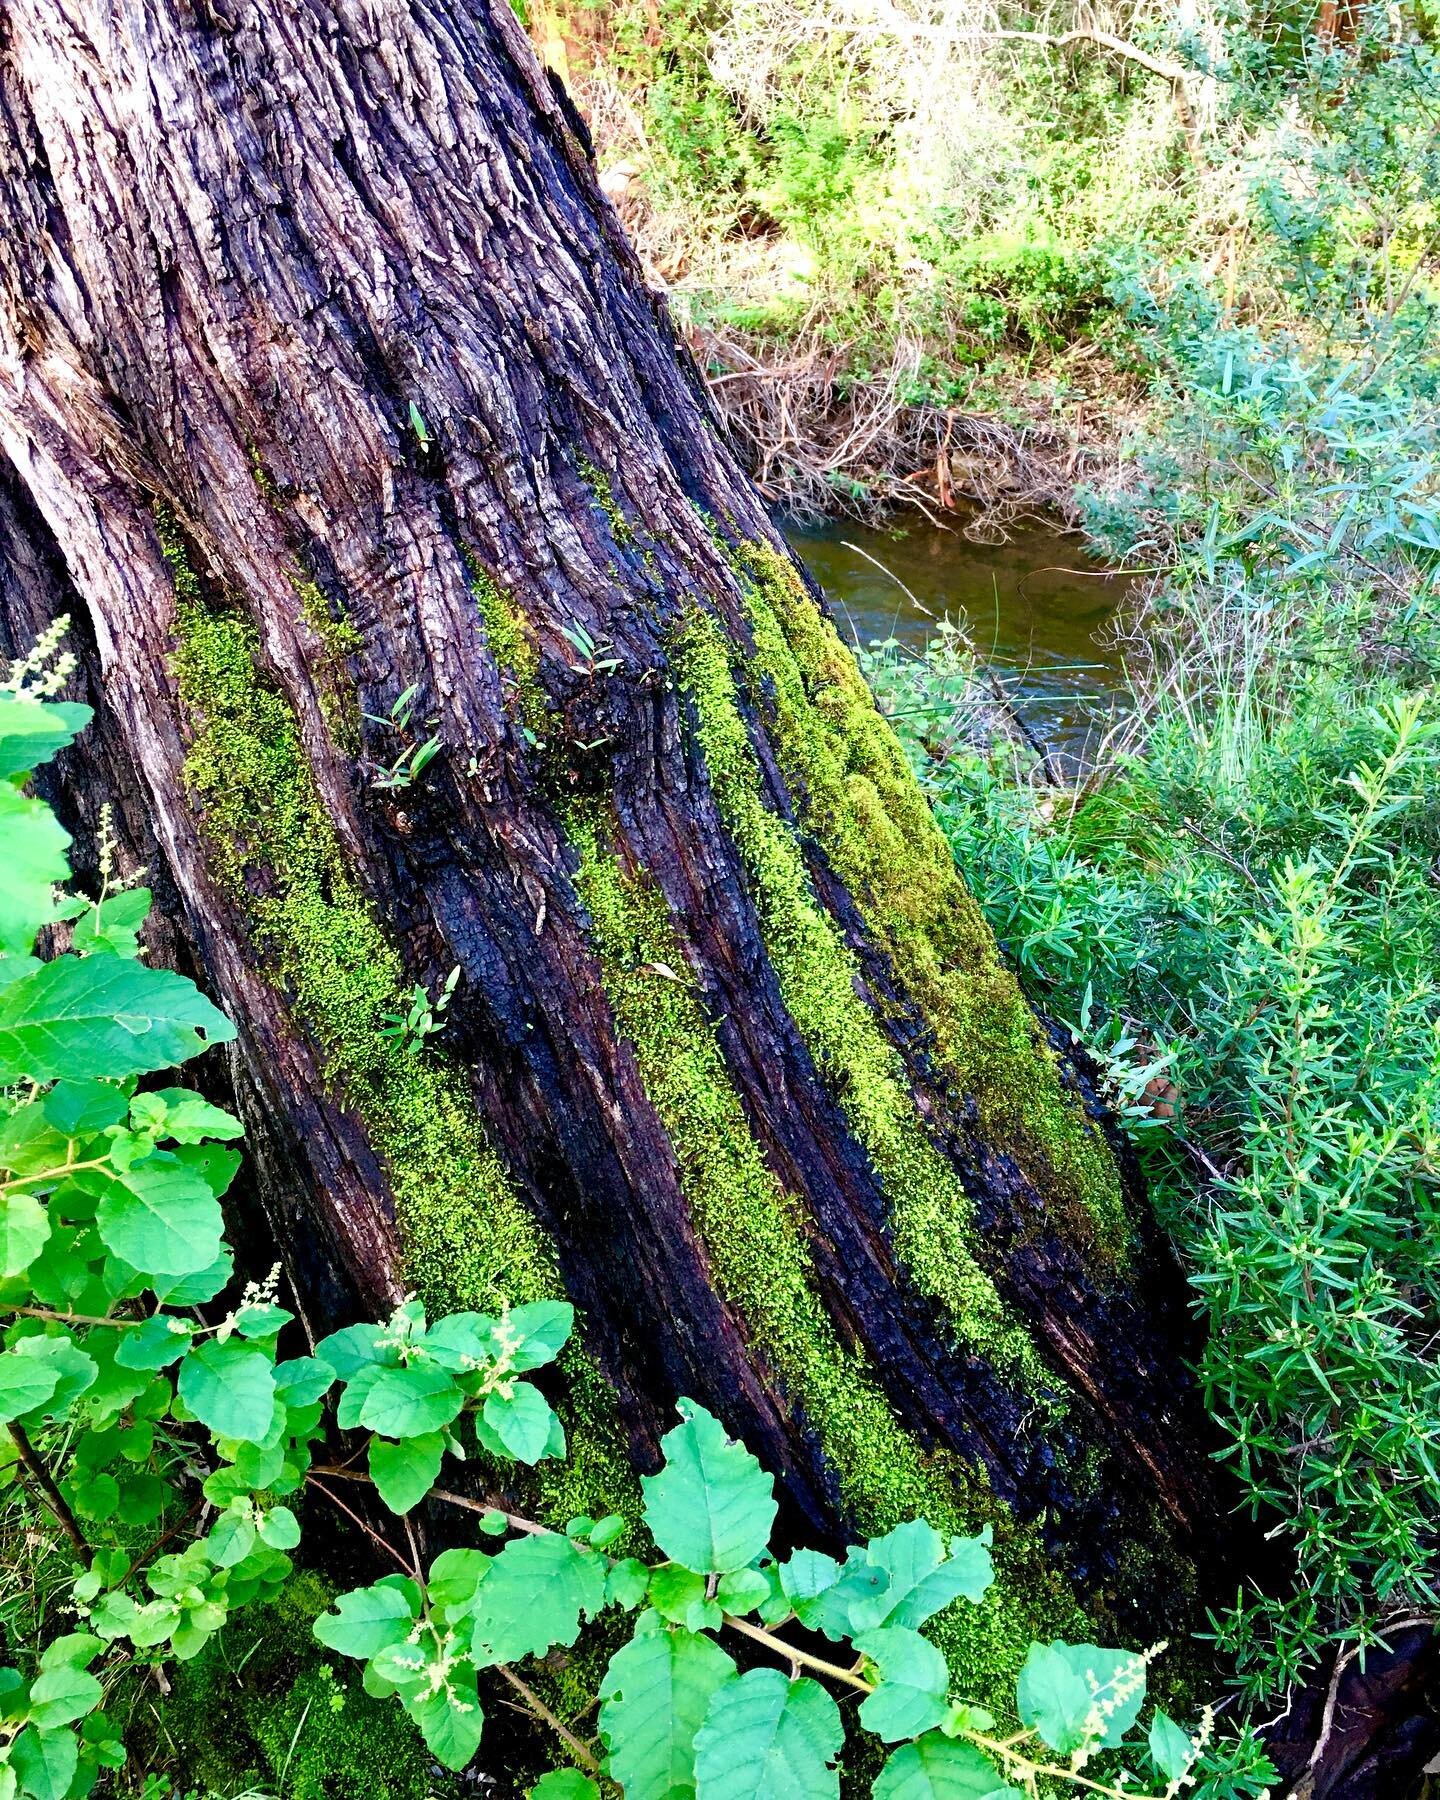 Can you smell the fresh forest from here? Come on a sensory walk in nature.www.joytrails.com.au #shonrinyoku #southwestwa #forestbathing #forestbathing🌲🌲🌲 #natureheals #shinrinyokujoy #joyfulliving #getoutside #natureplay #moss #foresthealing #gre